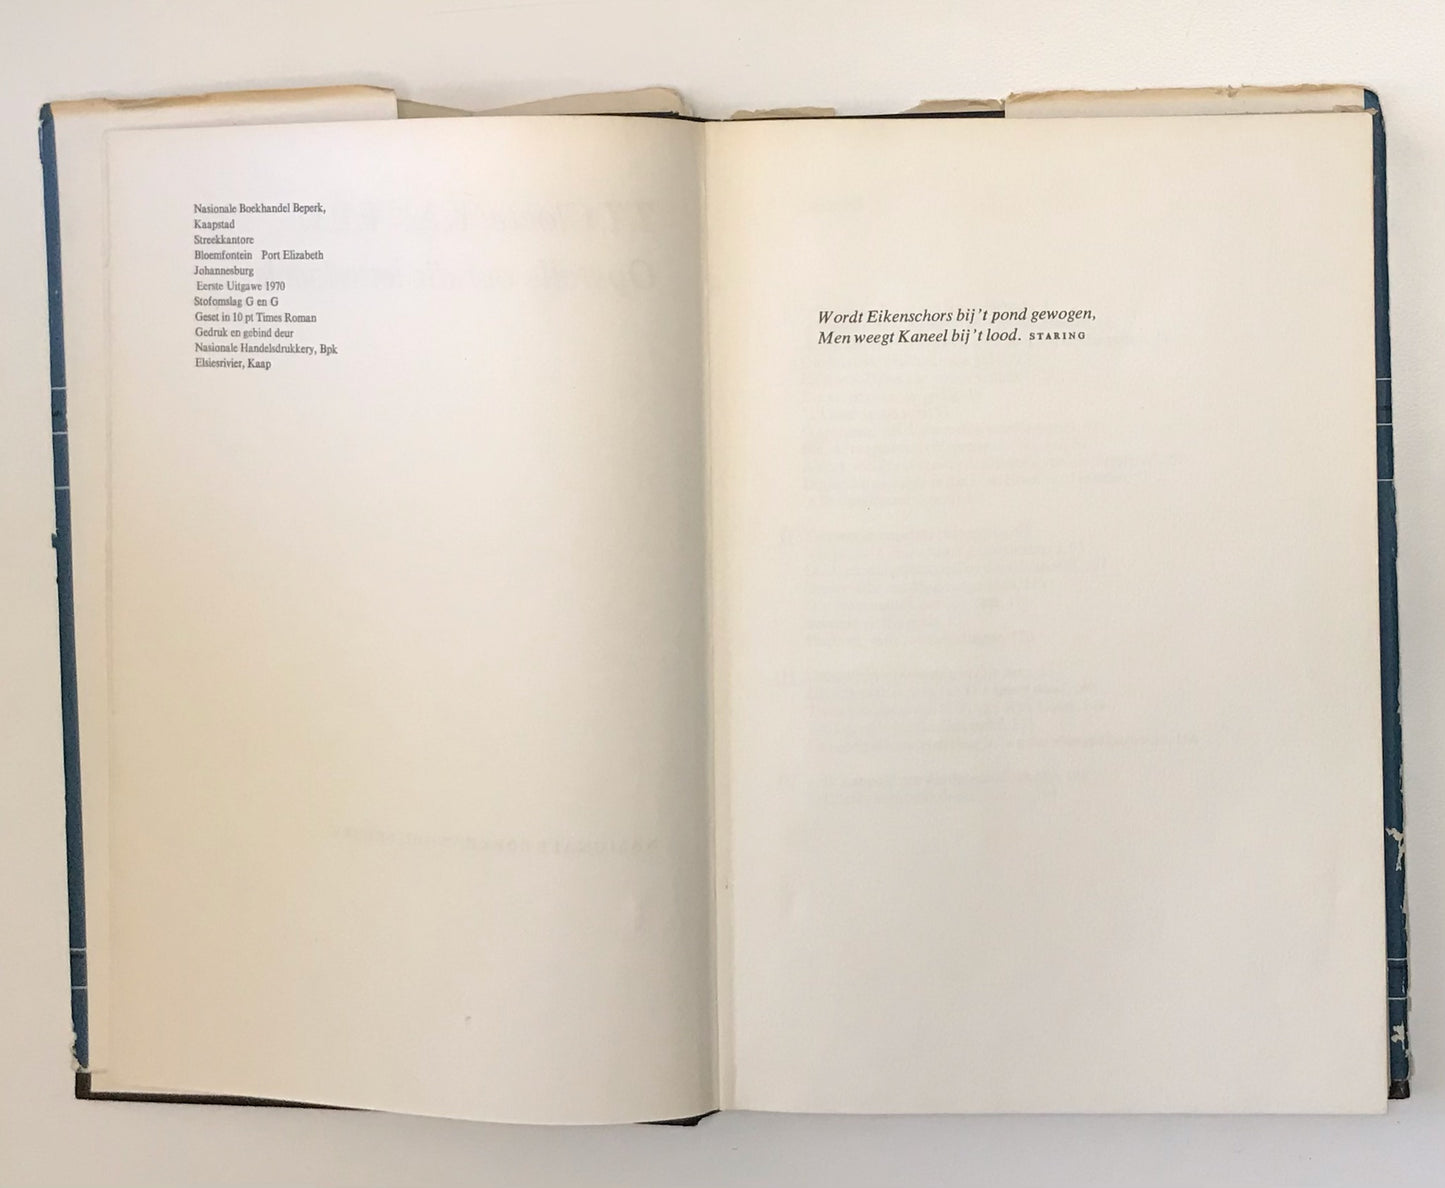 Kaneel: Studies oor die poësie, prosa en die kunsteorie - T.T. Cloete (First edition)